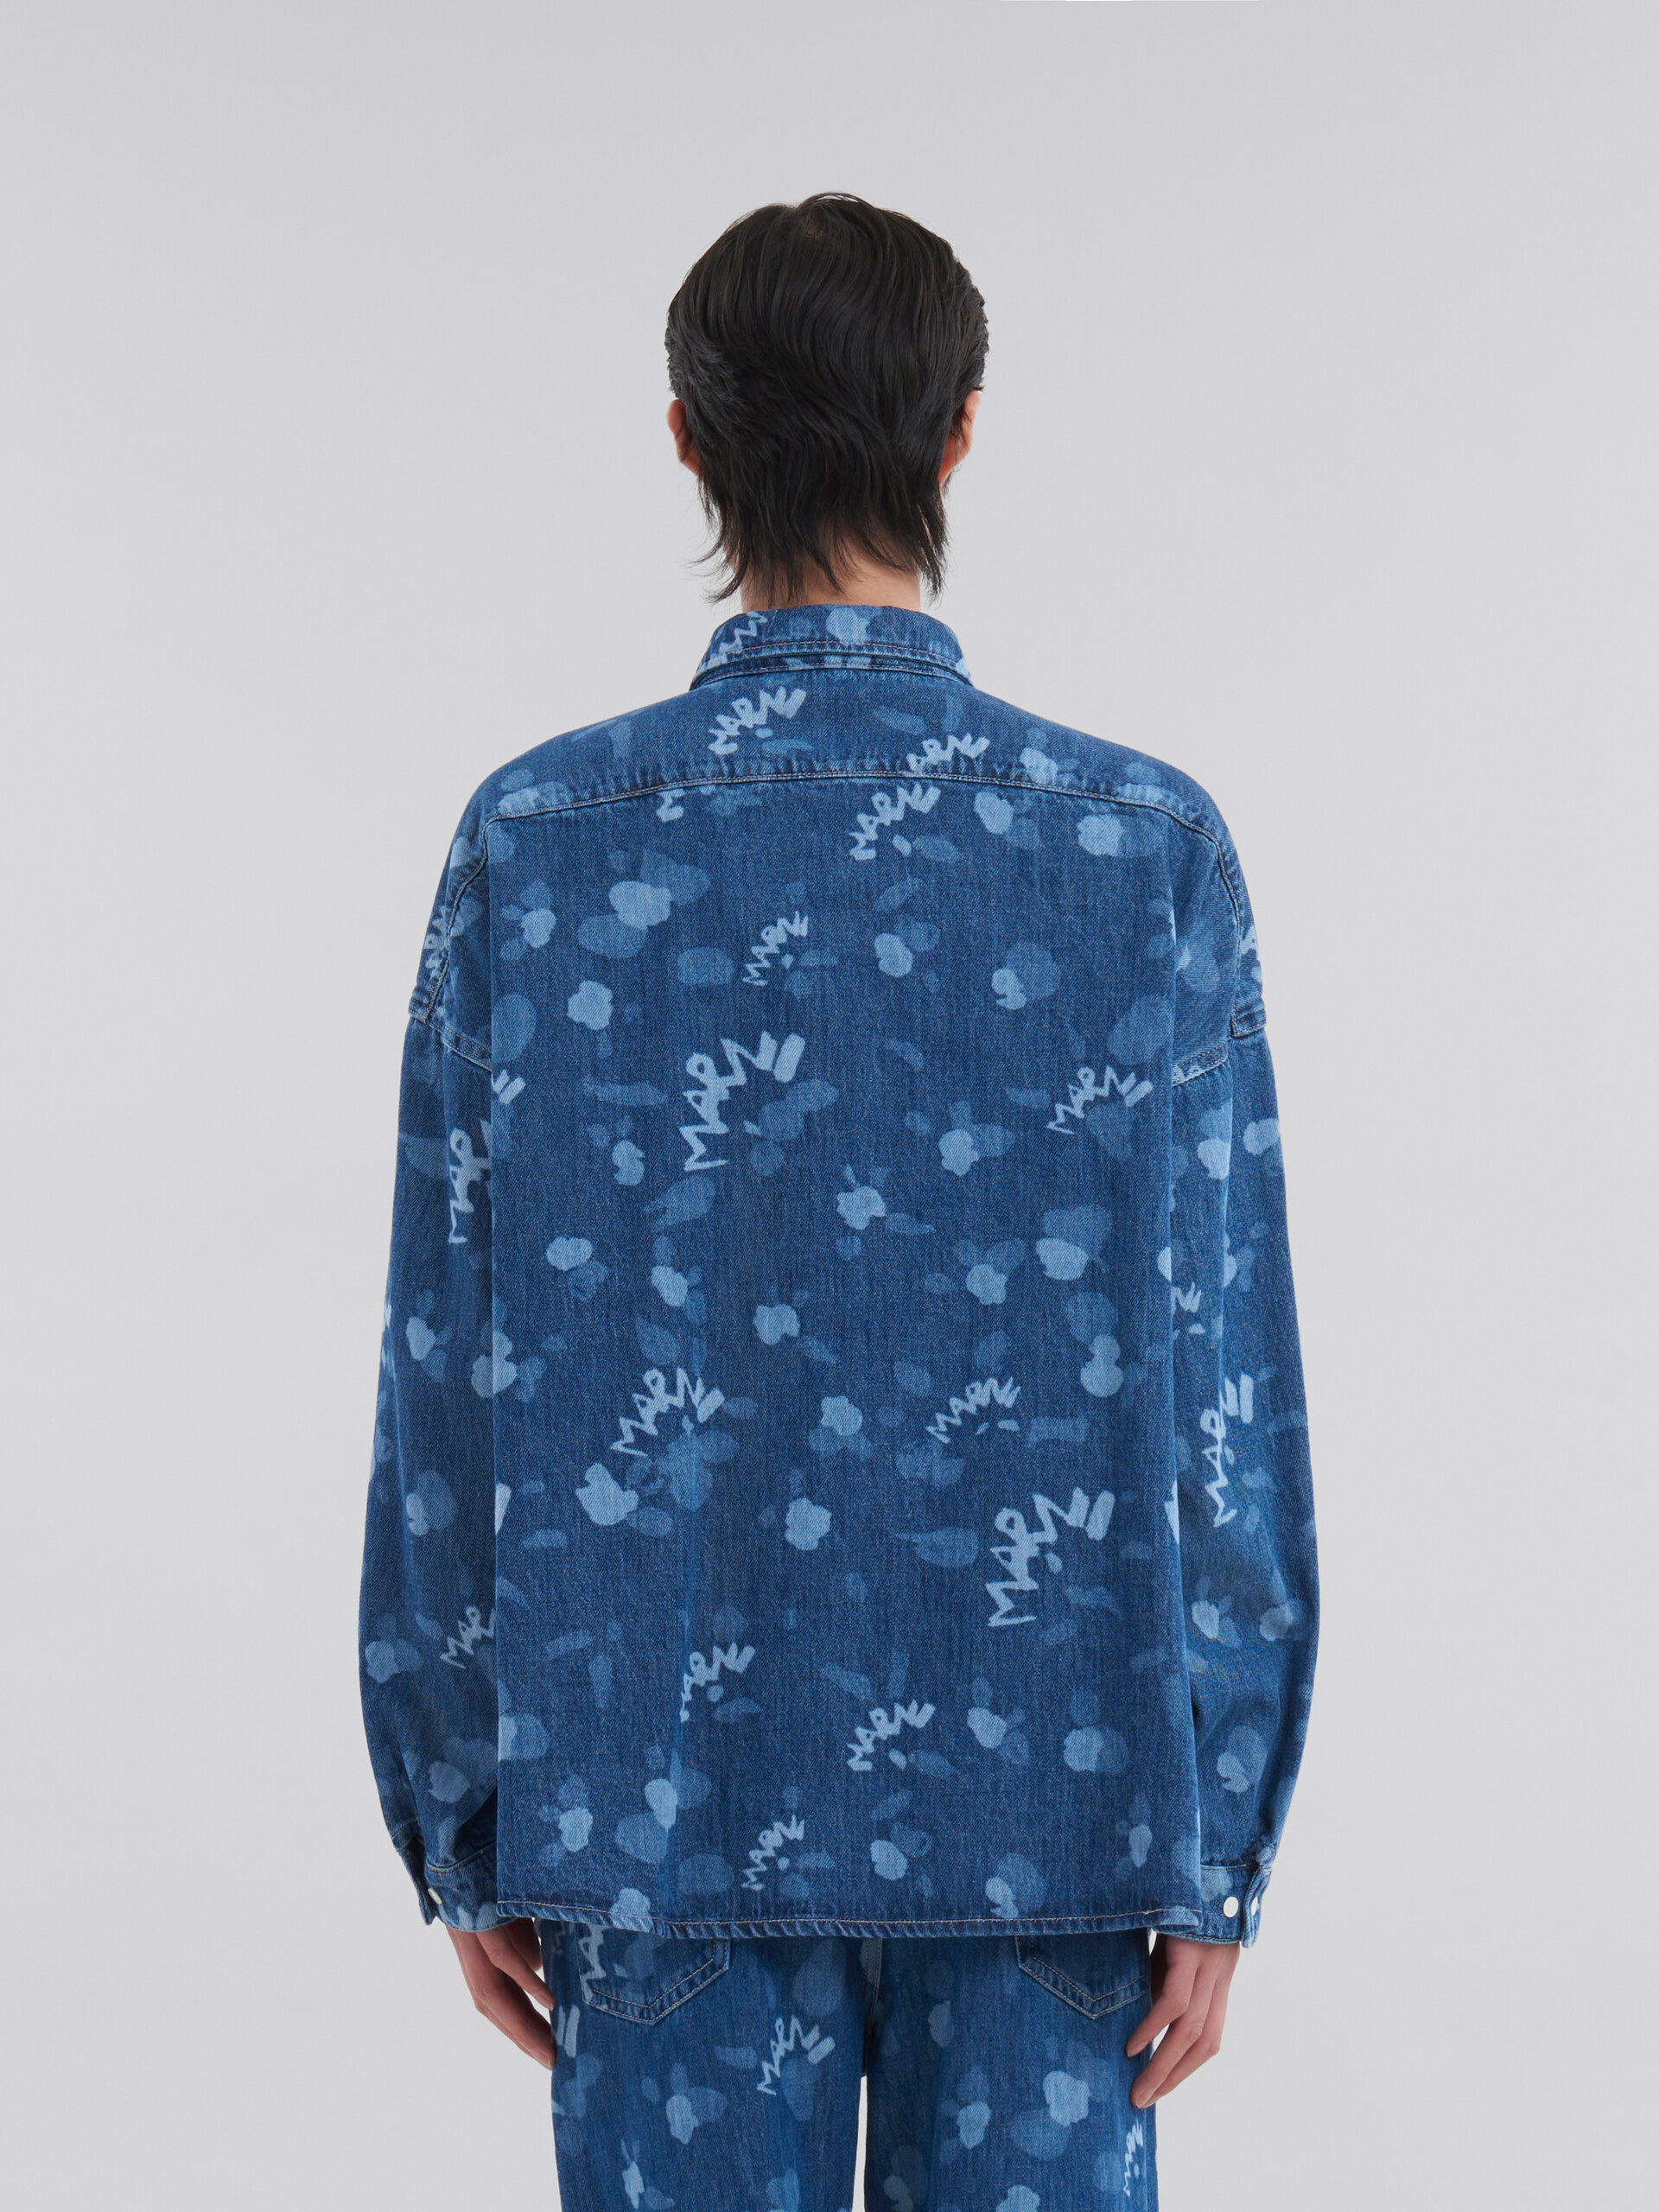 ブルー Marni Drippingプリント デニム製シャツ - シャツ - Image 3